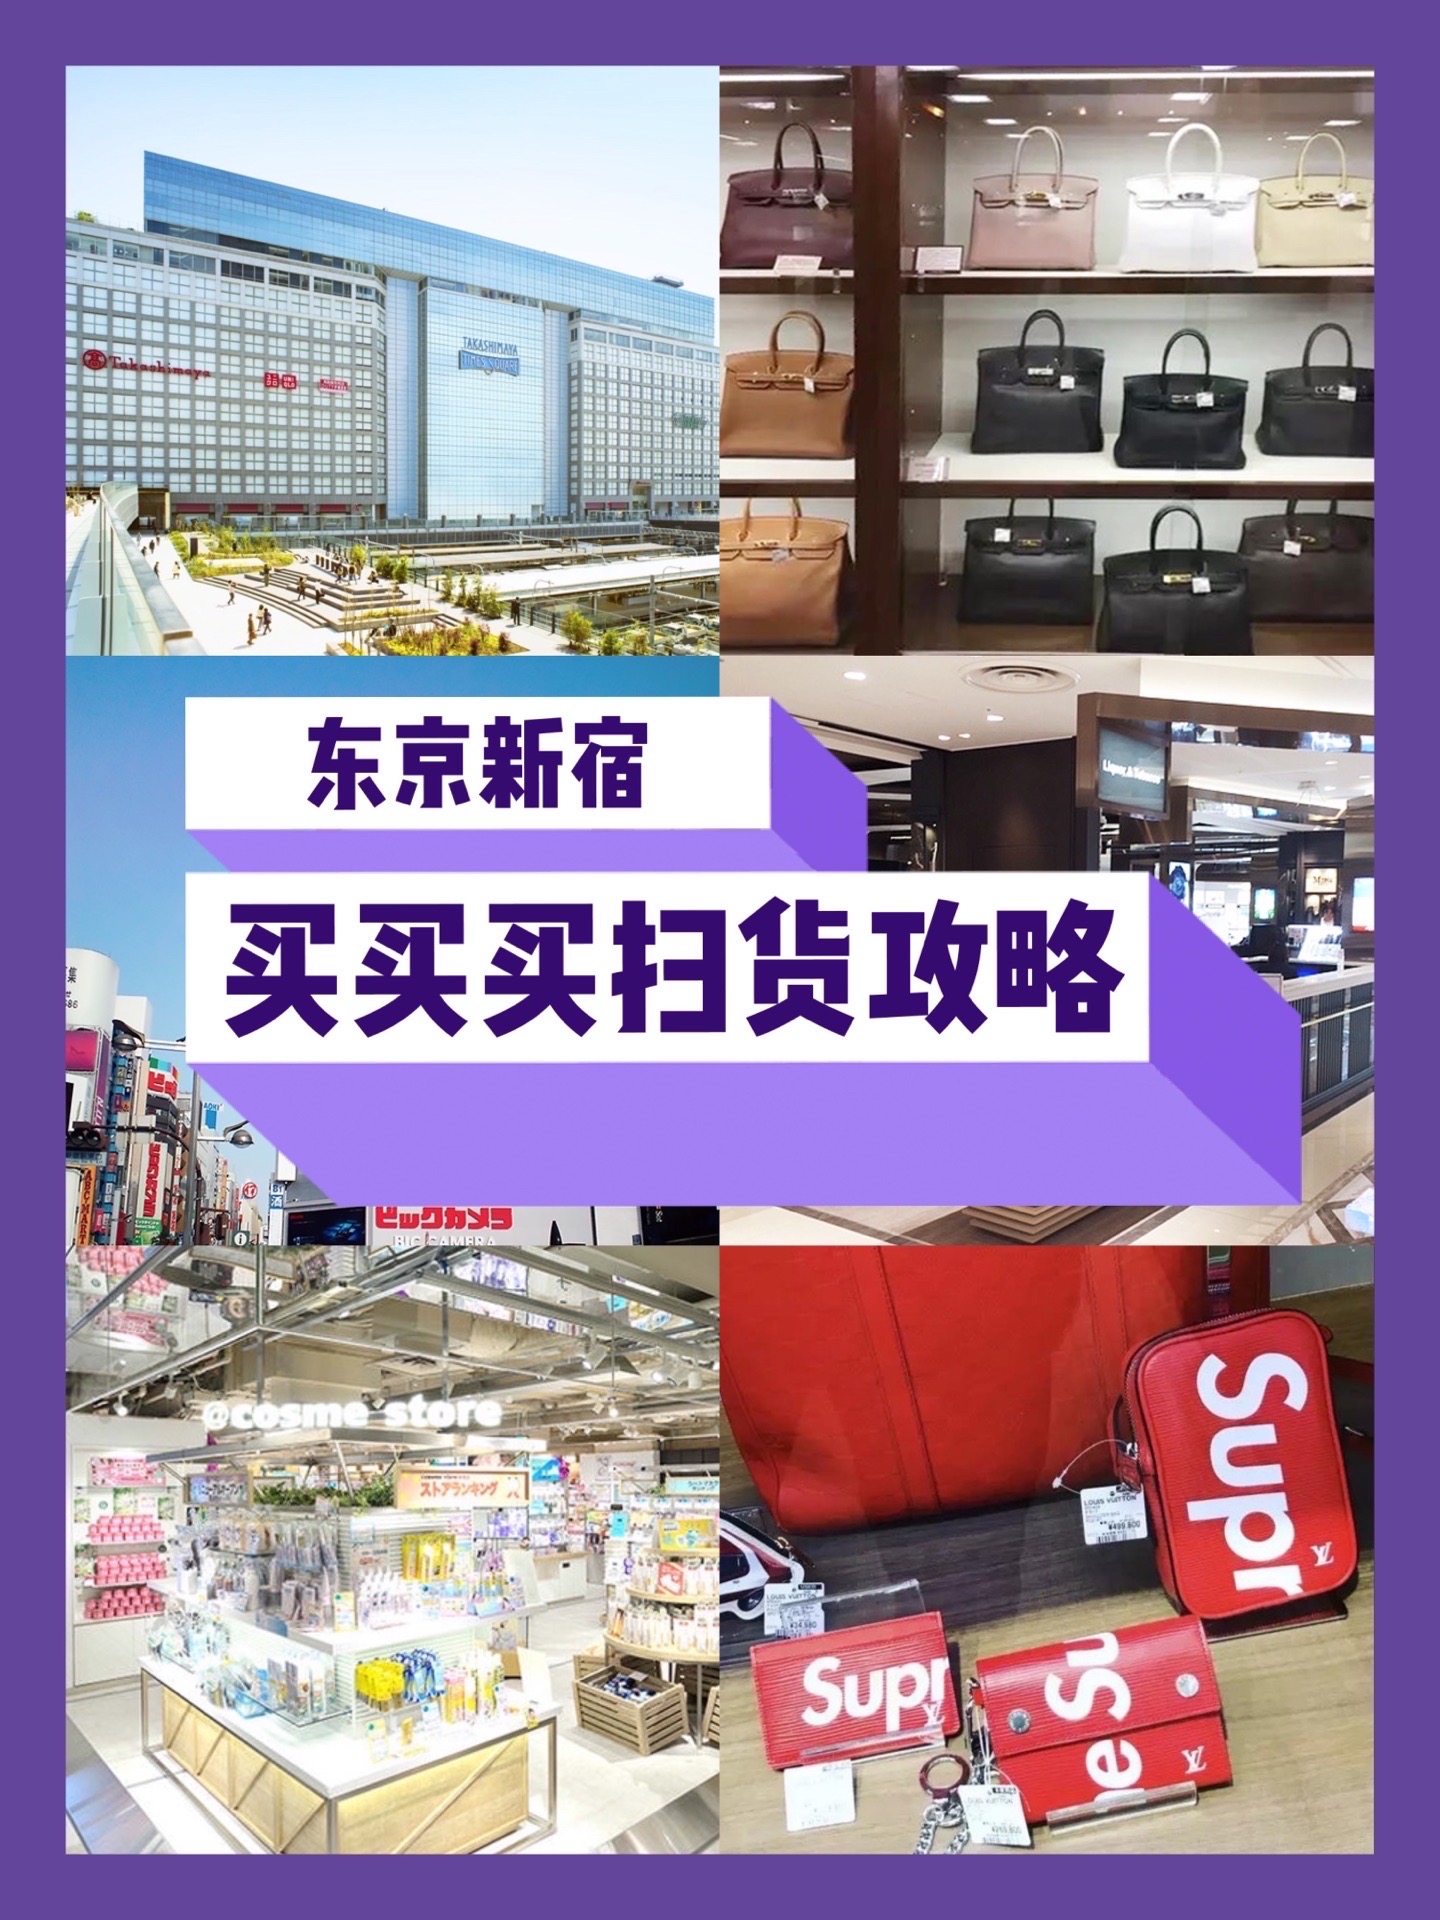 【东京新宿买买买扫货攻略】 ‼️新宿站是东京最大的地铁站之一，周围全是百货大厦，药妆店、服饰店应有尽